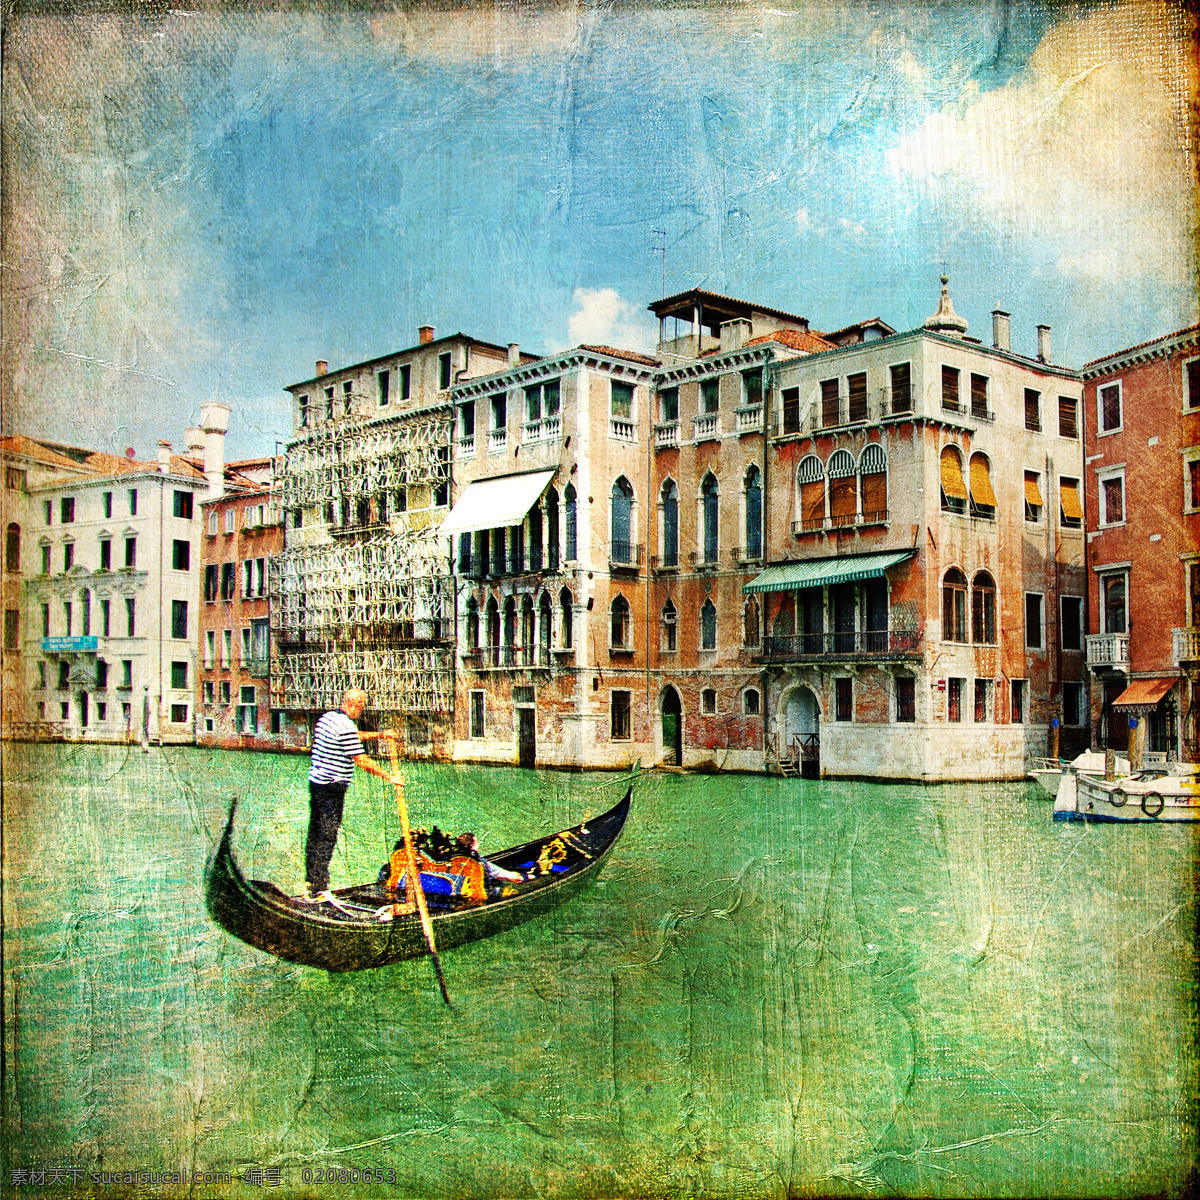 威尼斯 小河 风景 照片 威尼斯风景 小河风景 小船 水城威尼斯 意大利 旅游景点 美丽风景 怀旧 城市 相片 怀旧风景照片 城市风光 环境家居